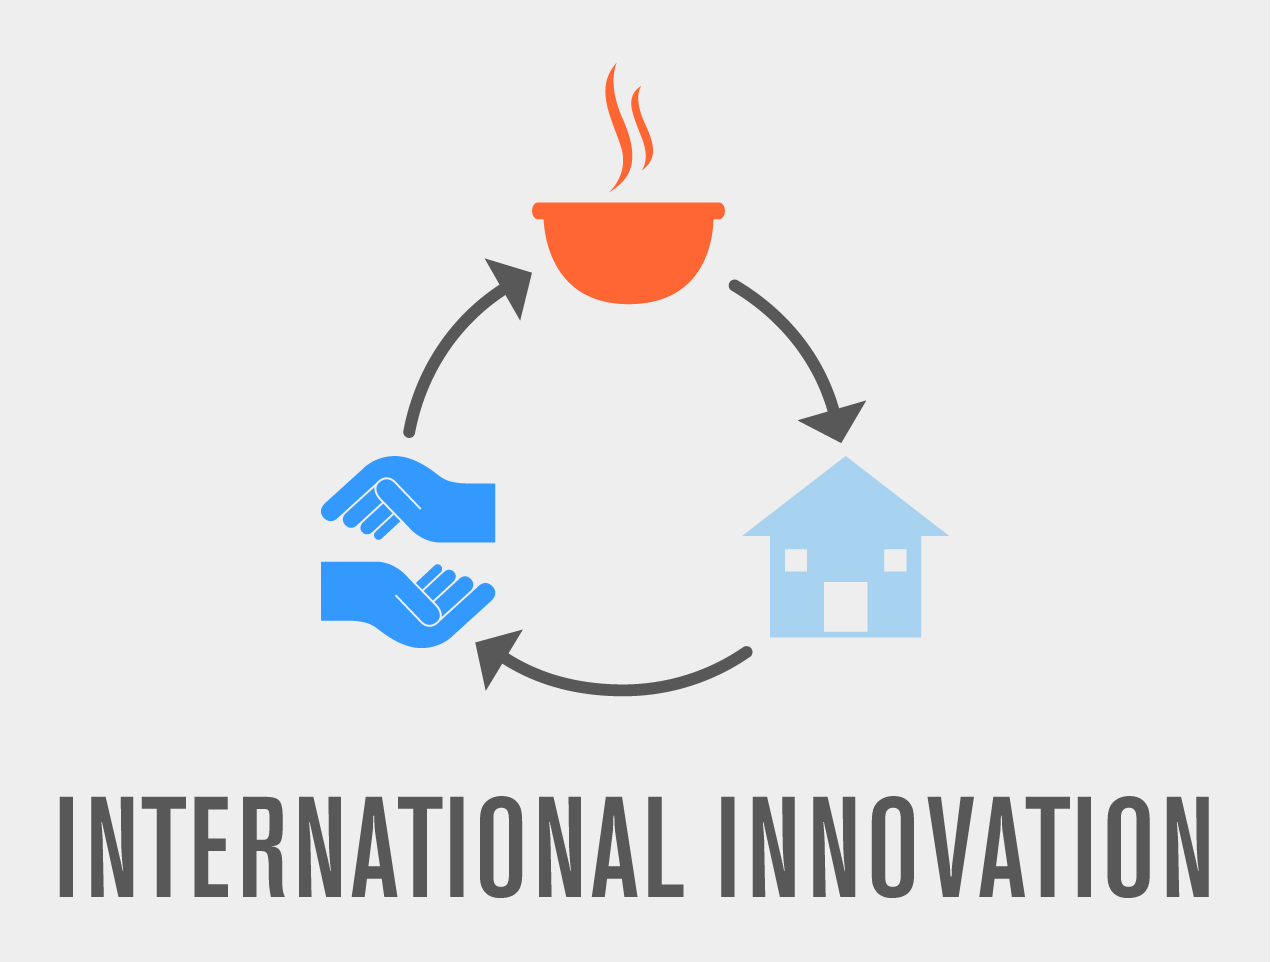 international_innovation